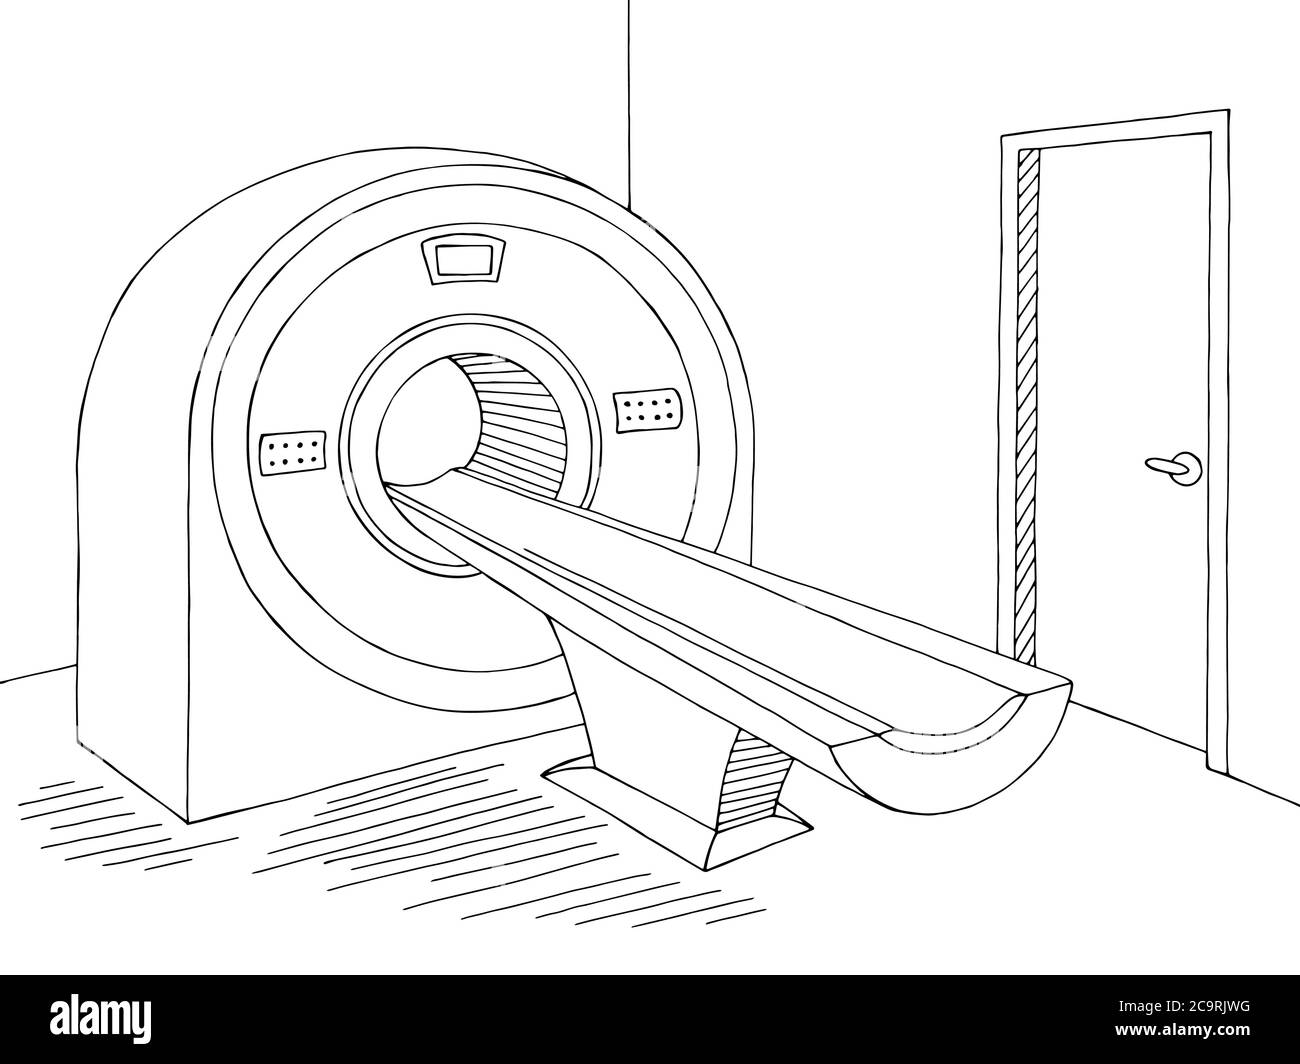 Computertomographie Scan Gerät Krankenhausraum Innengrafik schwarz weiß Skizze Illustration Vektor Stock Vektor